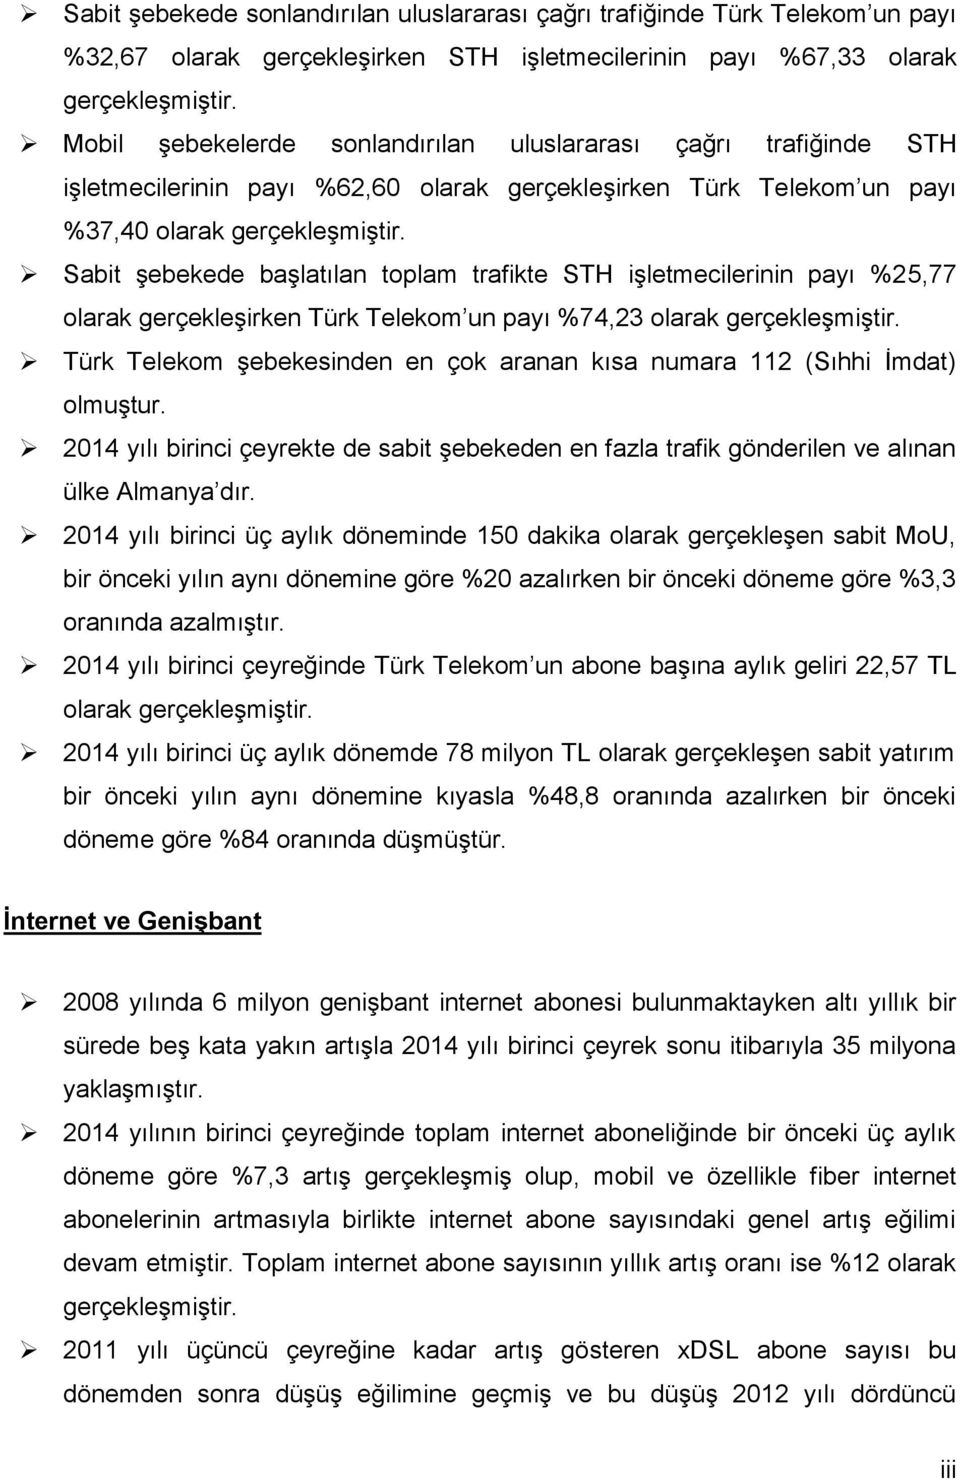 Sabit şebekede başlatılan toplam trafikte STH işletmecilerinin payı %25,77 olarak gerçekleşirken Türk Telekom un payı %74,23 olarak gerçekleşmiştir.